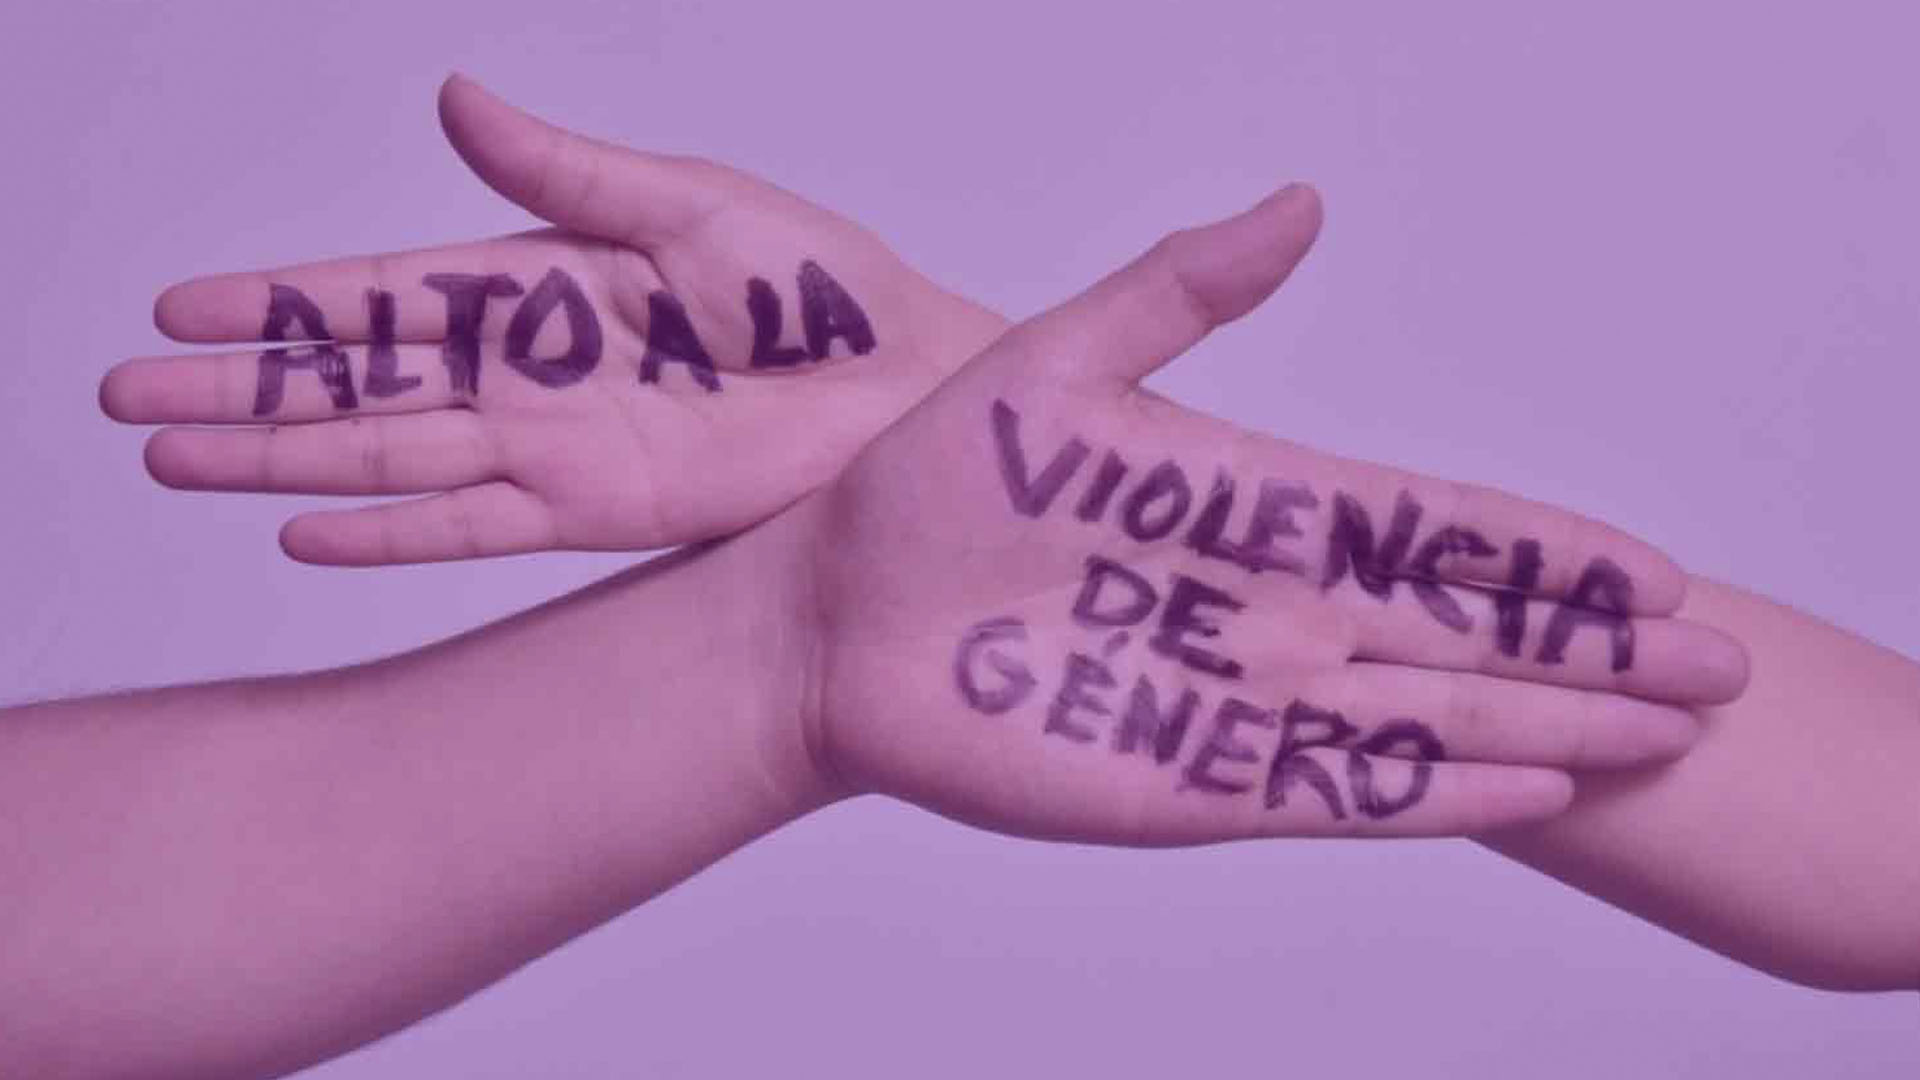 Codehciu contabiliza 65 víctimas de violencia de género los primeros cinco meses de 2023